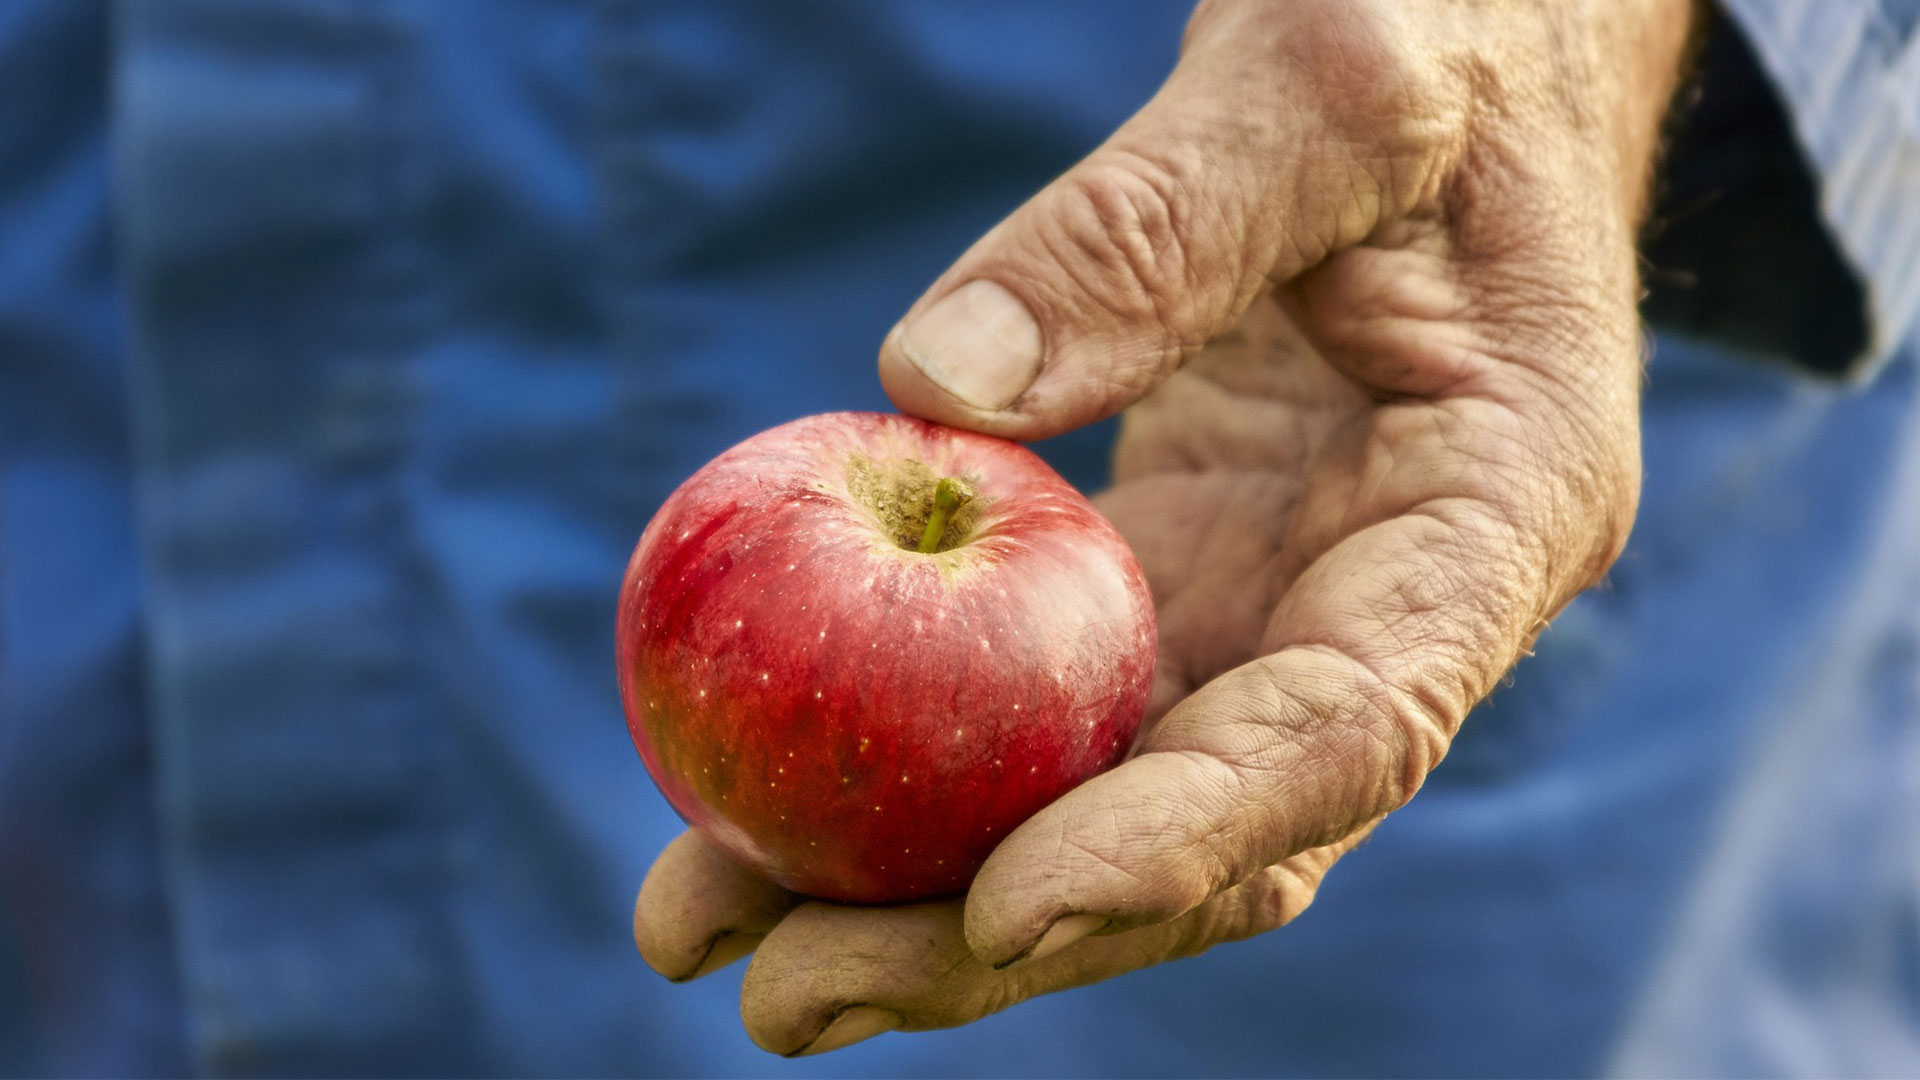 En fårad hand håller i ett rött äpple.